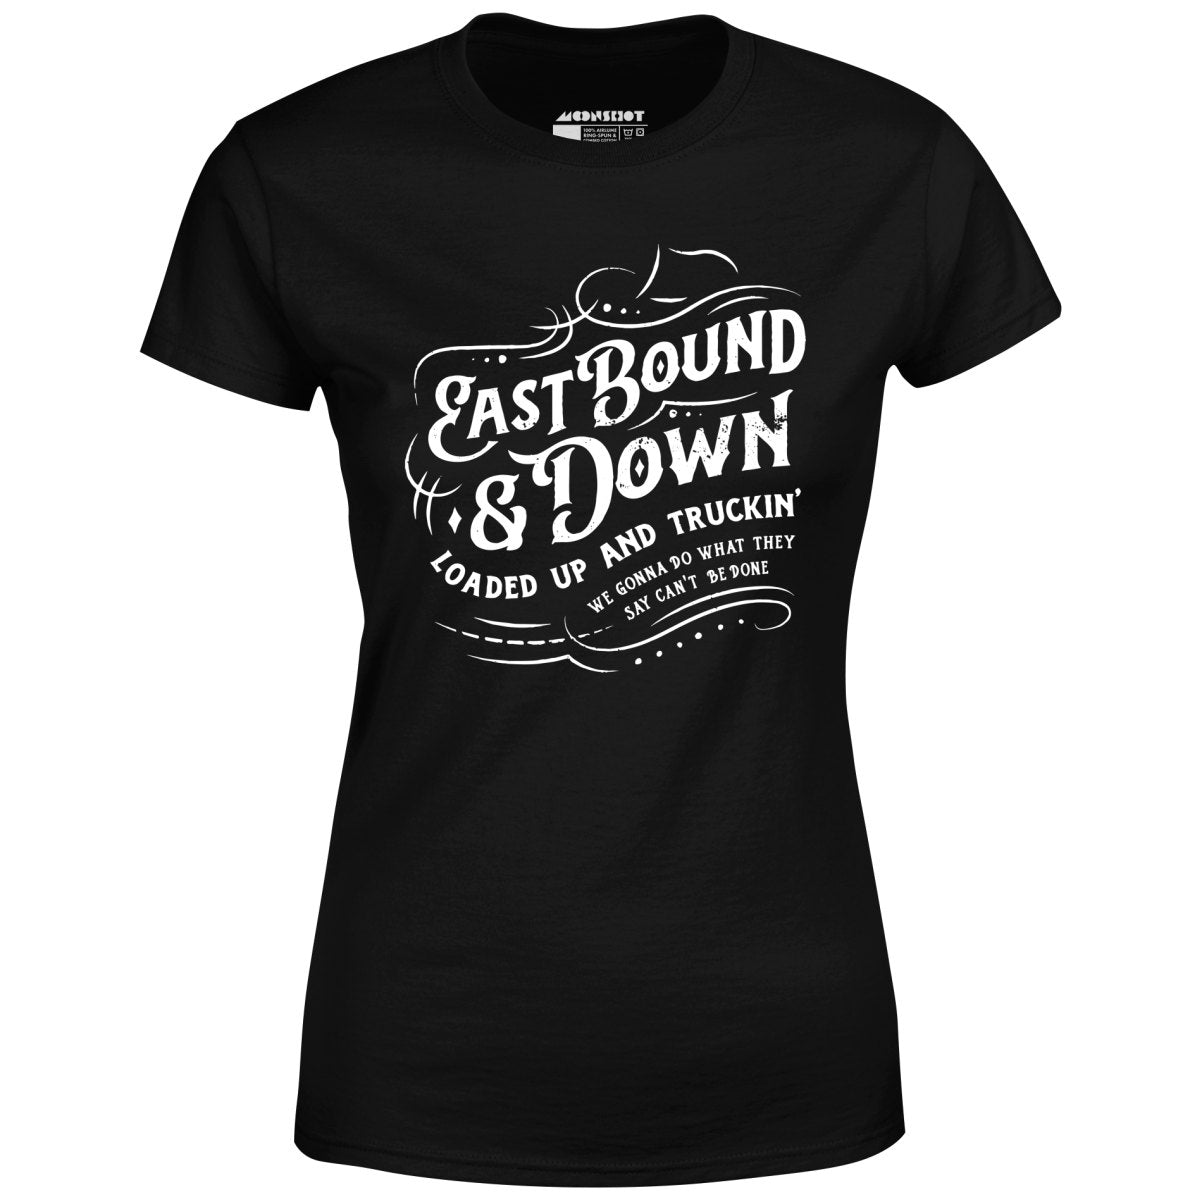 Eastbound & Down - Women's T-Shirt